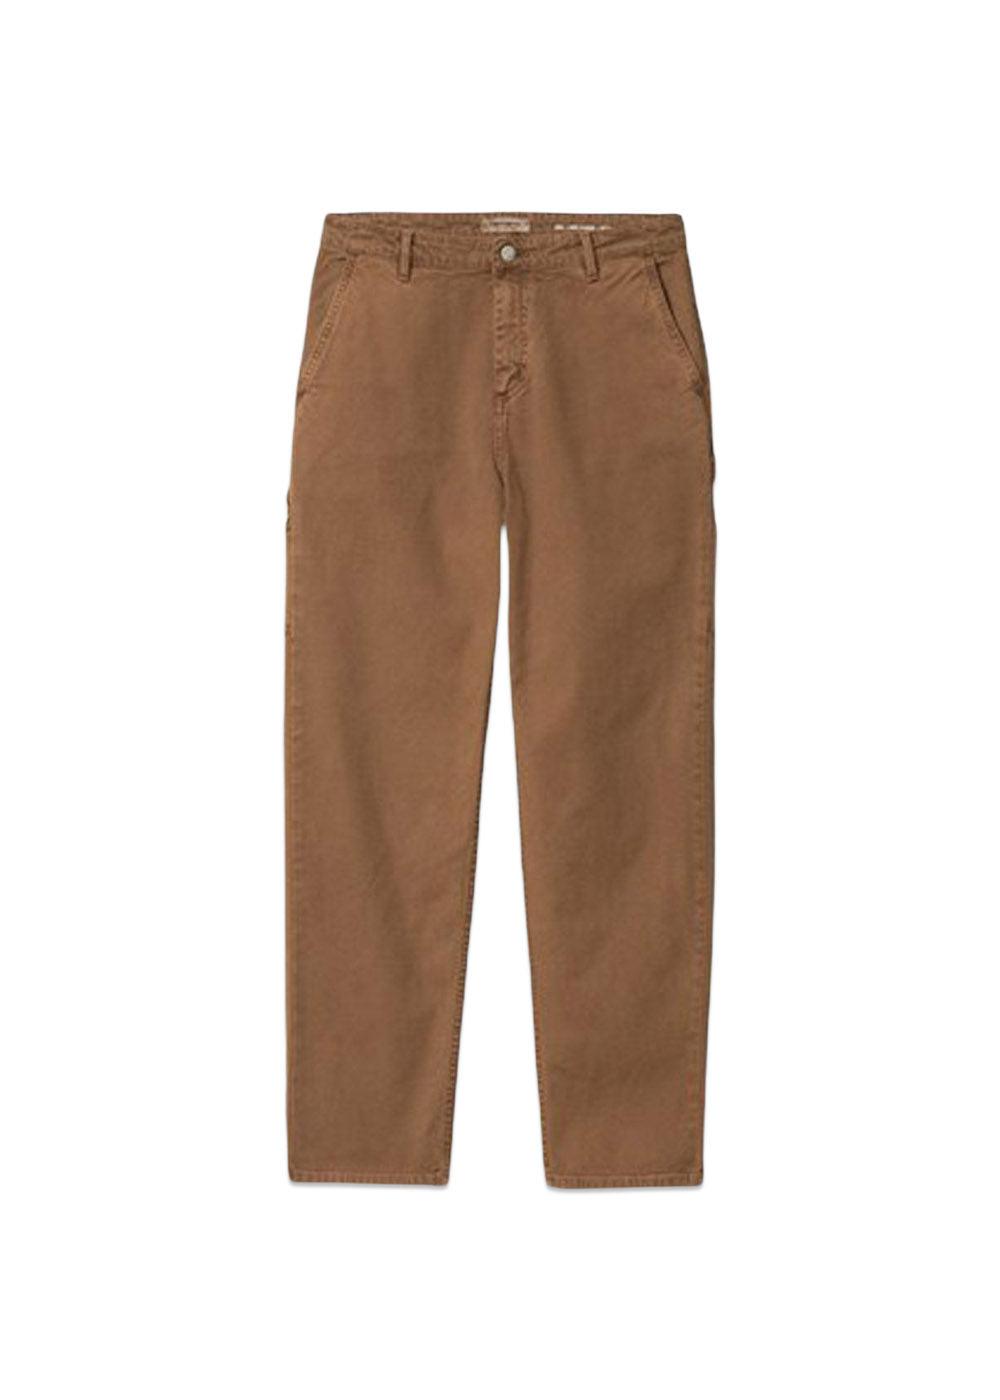 Carhartt WIP's W' Pierce Pant Straight - Tamarind. Køb bukser her.